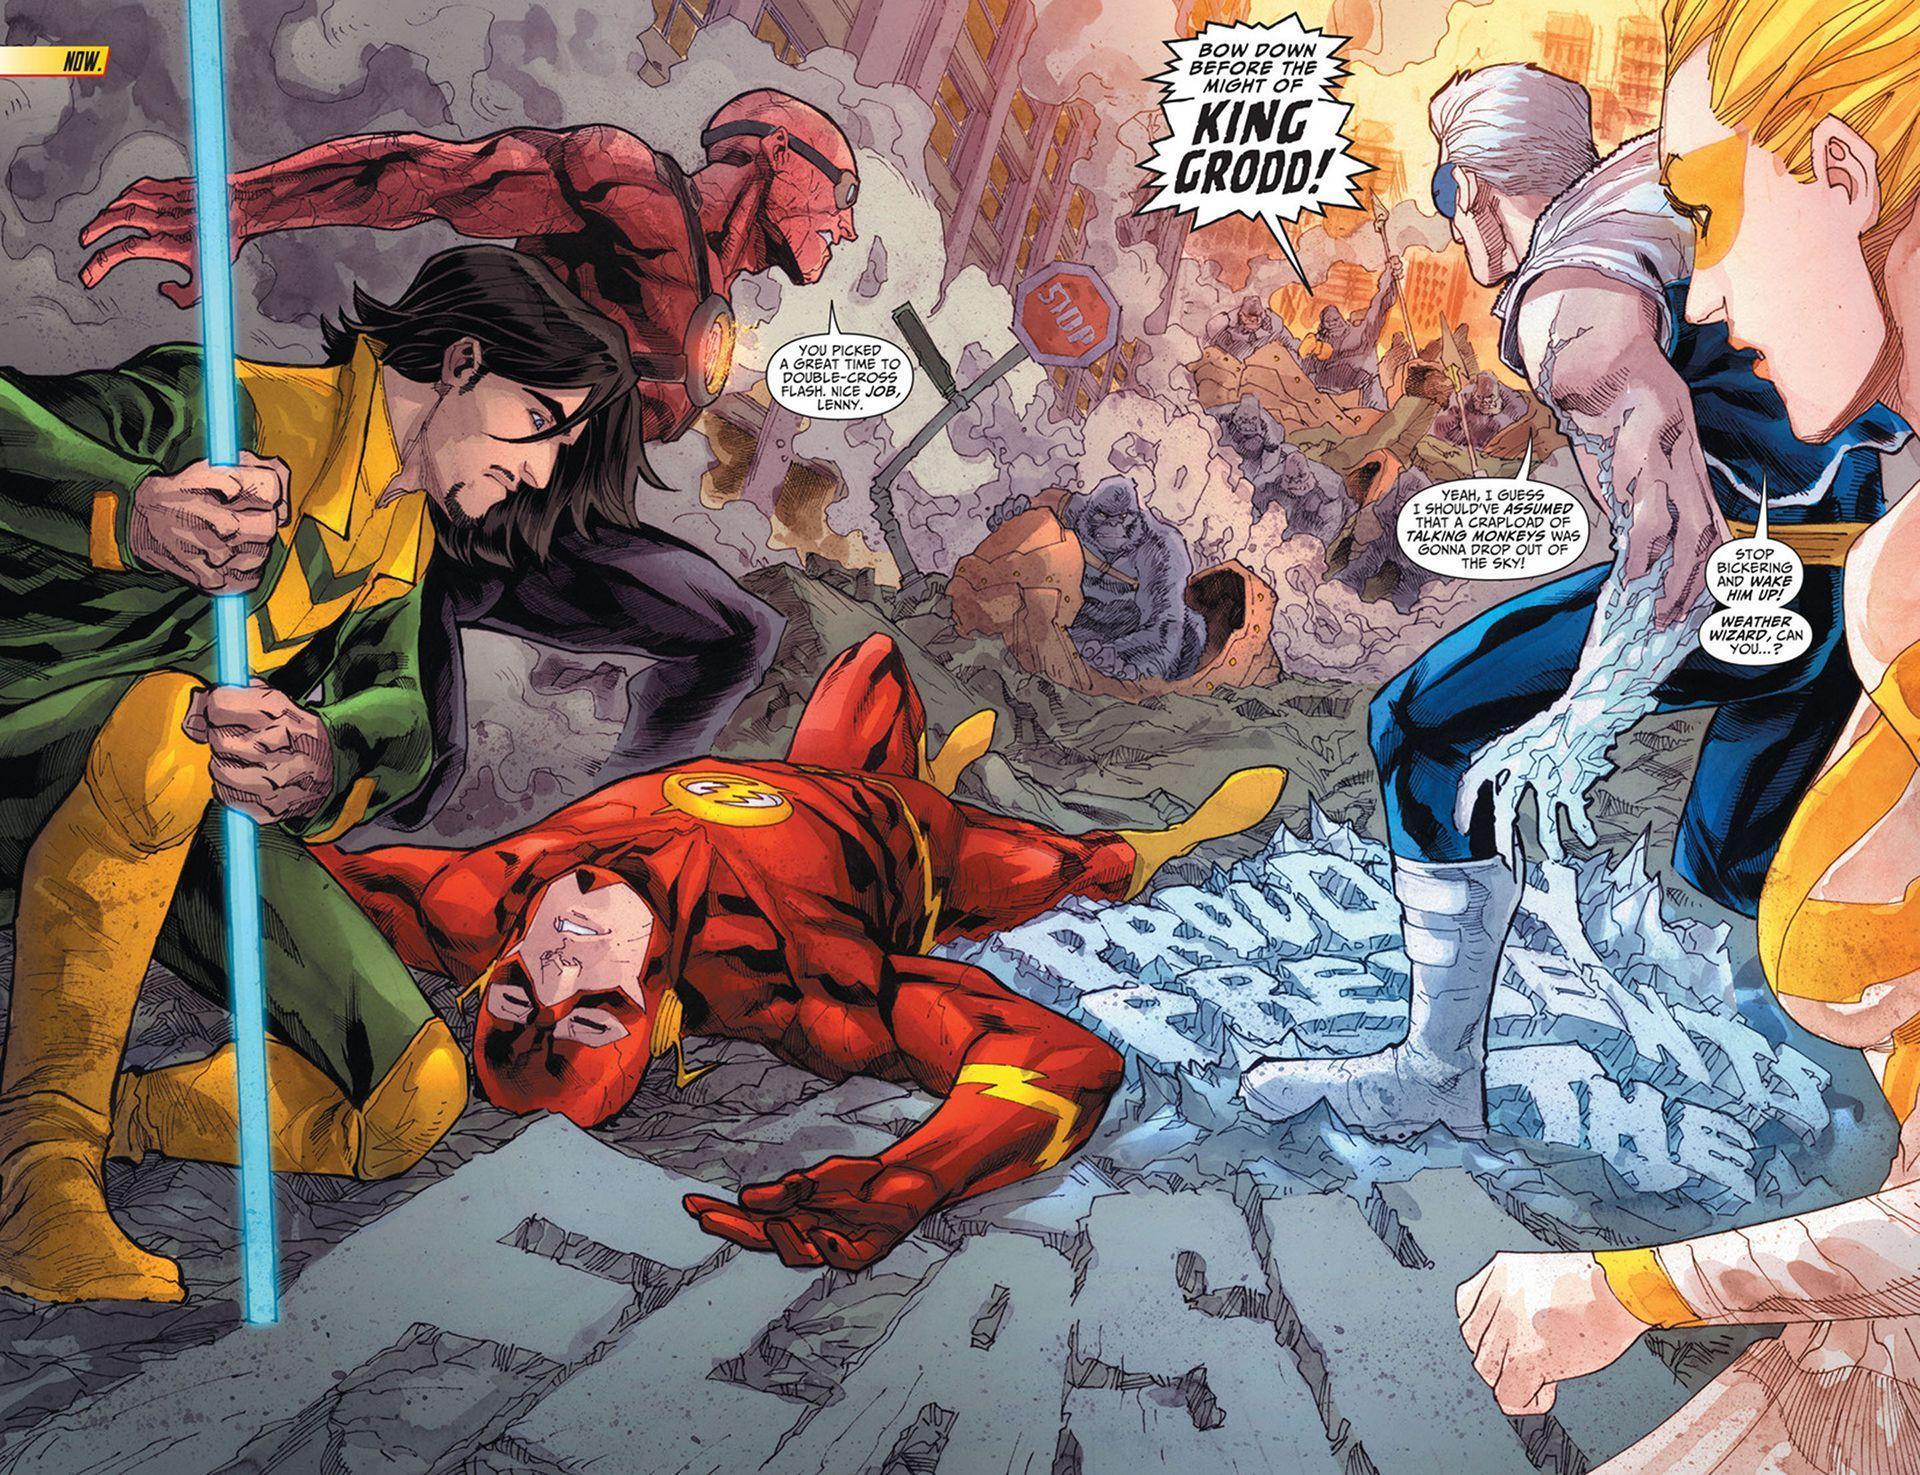 The Flash Wallpaper DC Comics